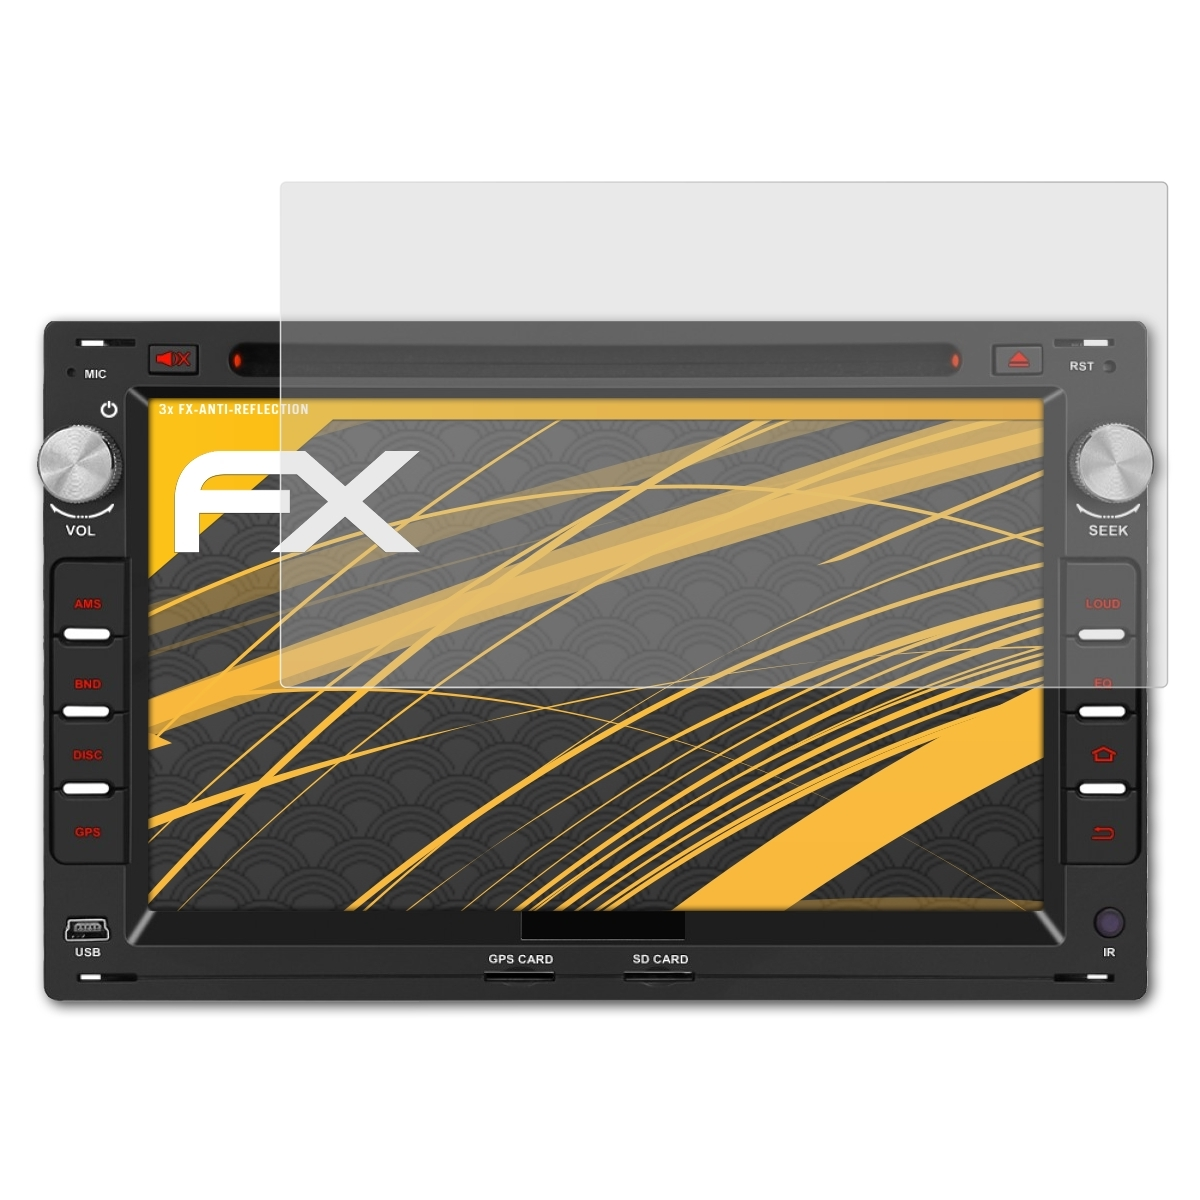 ATFOLIX 3x FX-Antireflex AA0407B Displayschutz(für Pumpkin Inch) 7